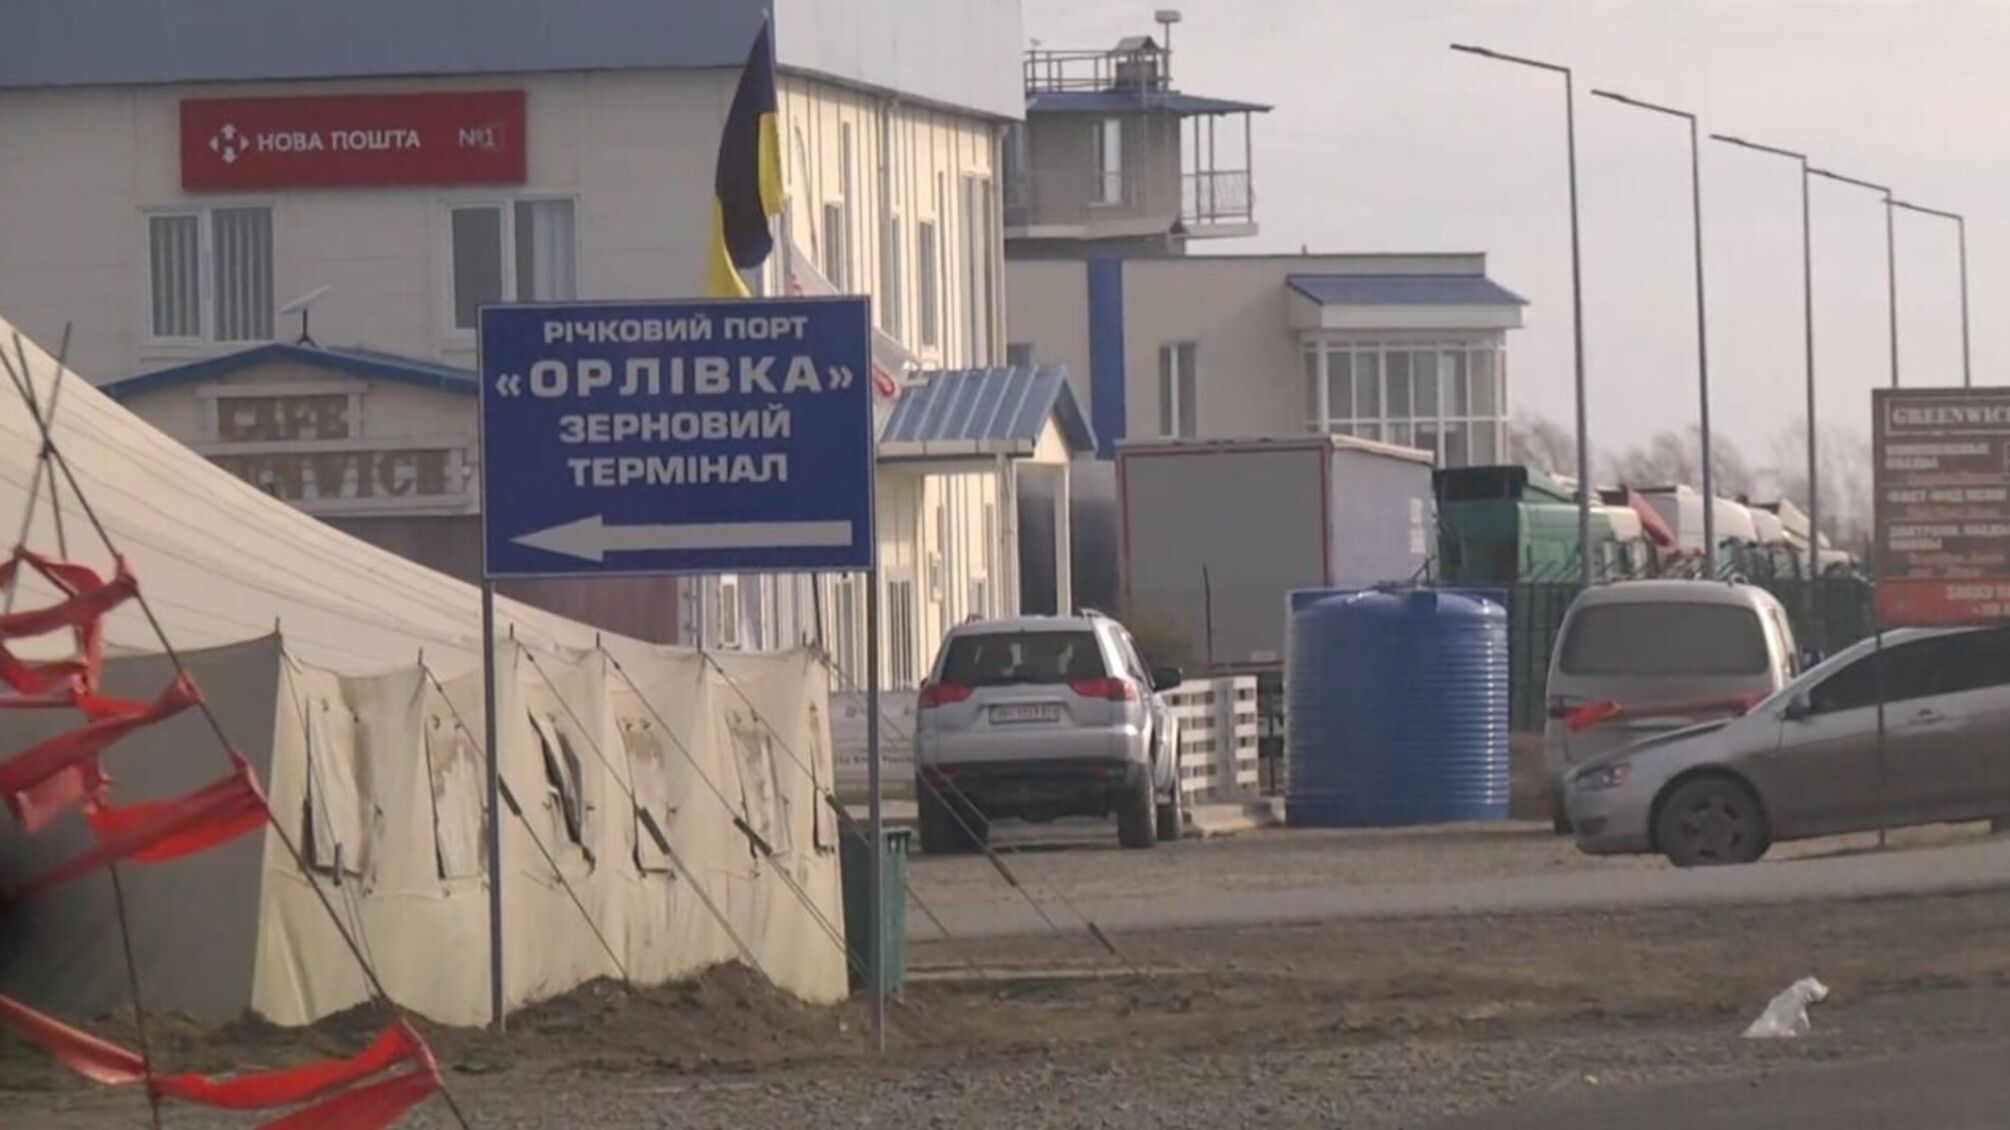 Важный гуманитарный груз 'застрял' на украинской границе в пункте пропуска 'Орловка'